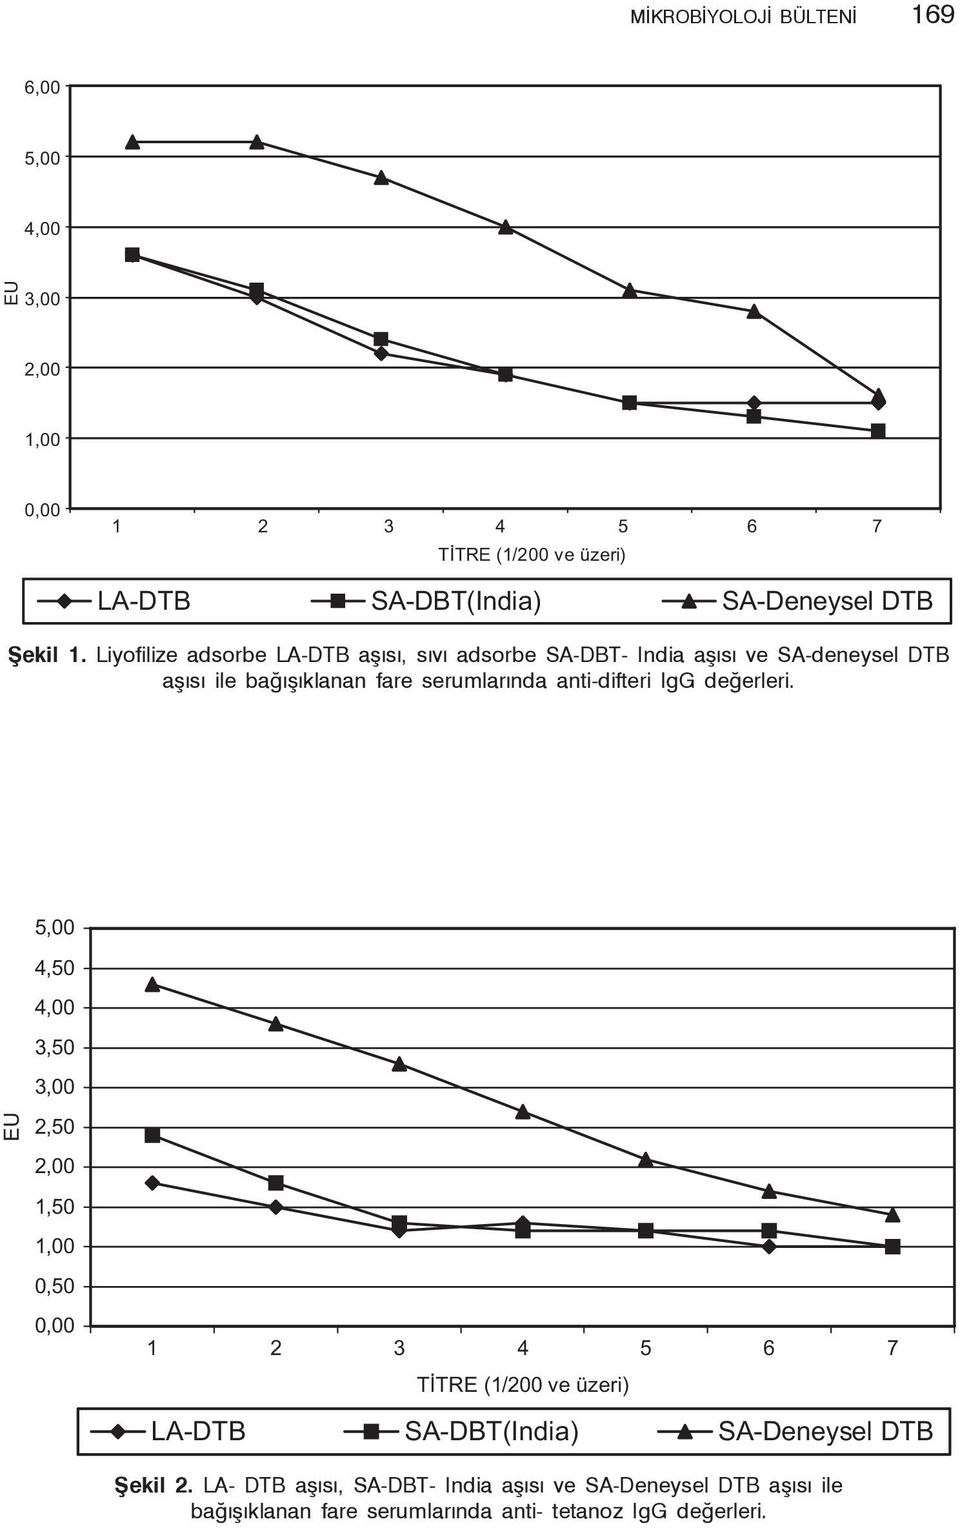 DTB aşısı ile bağışıklanan fare serumlarında anti-difteri IgG değerleri. Şekil 2.